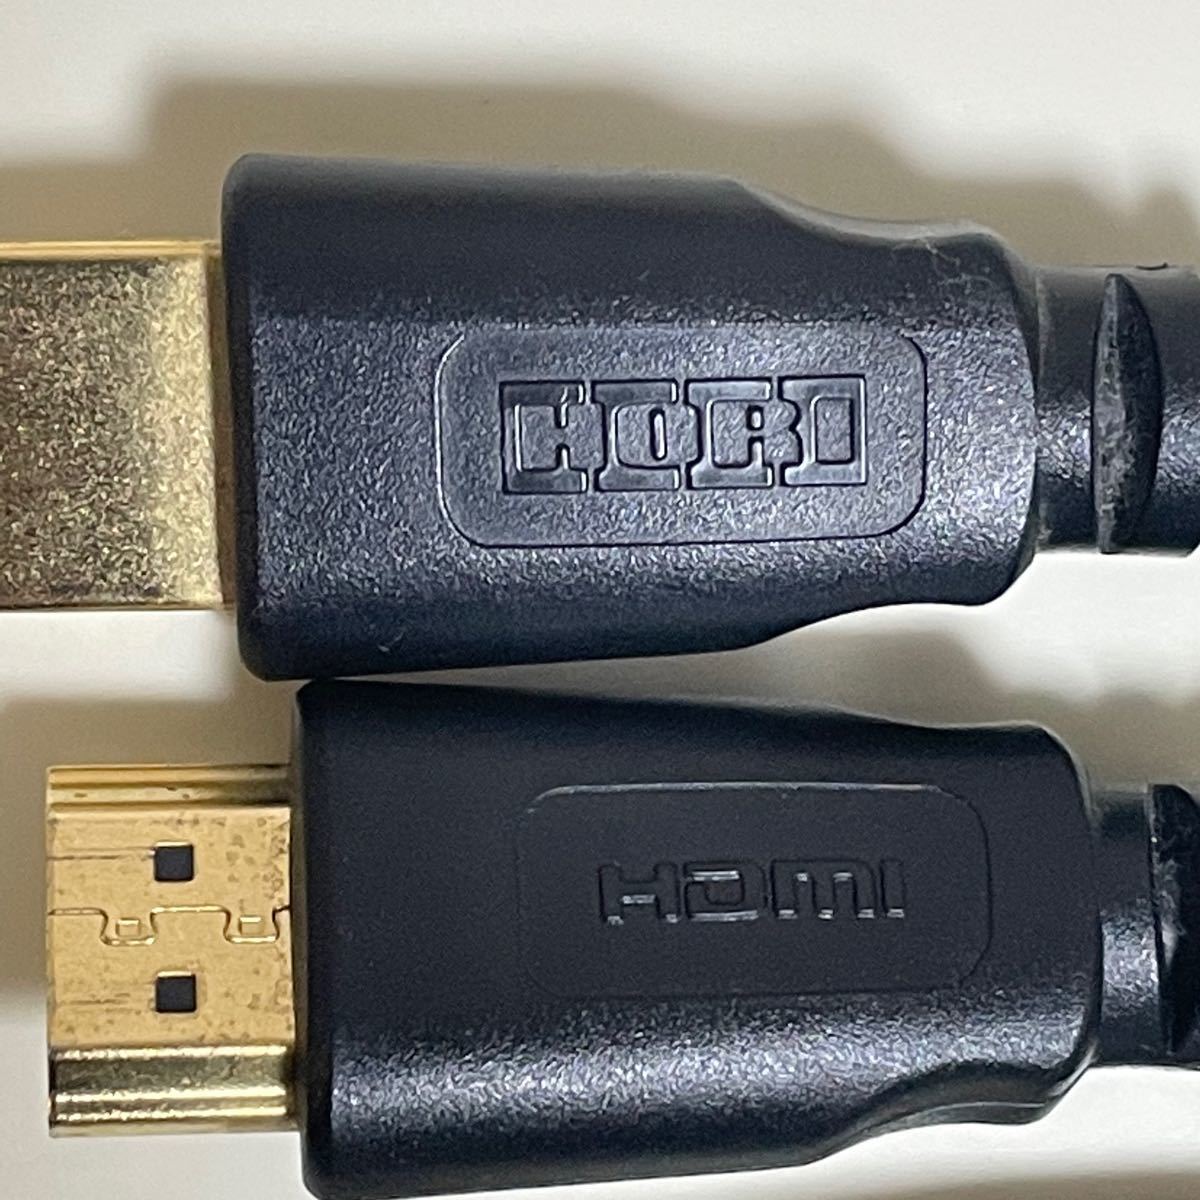 PS3 付属品(電源コード、AVコード、HDMI、コントローラー用USBケーブル) ドラクエ、ジョジョ